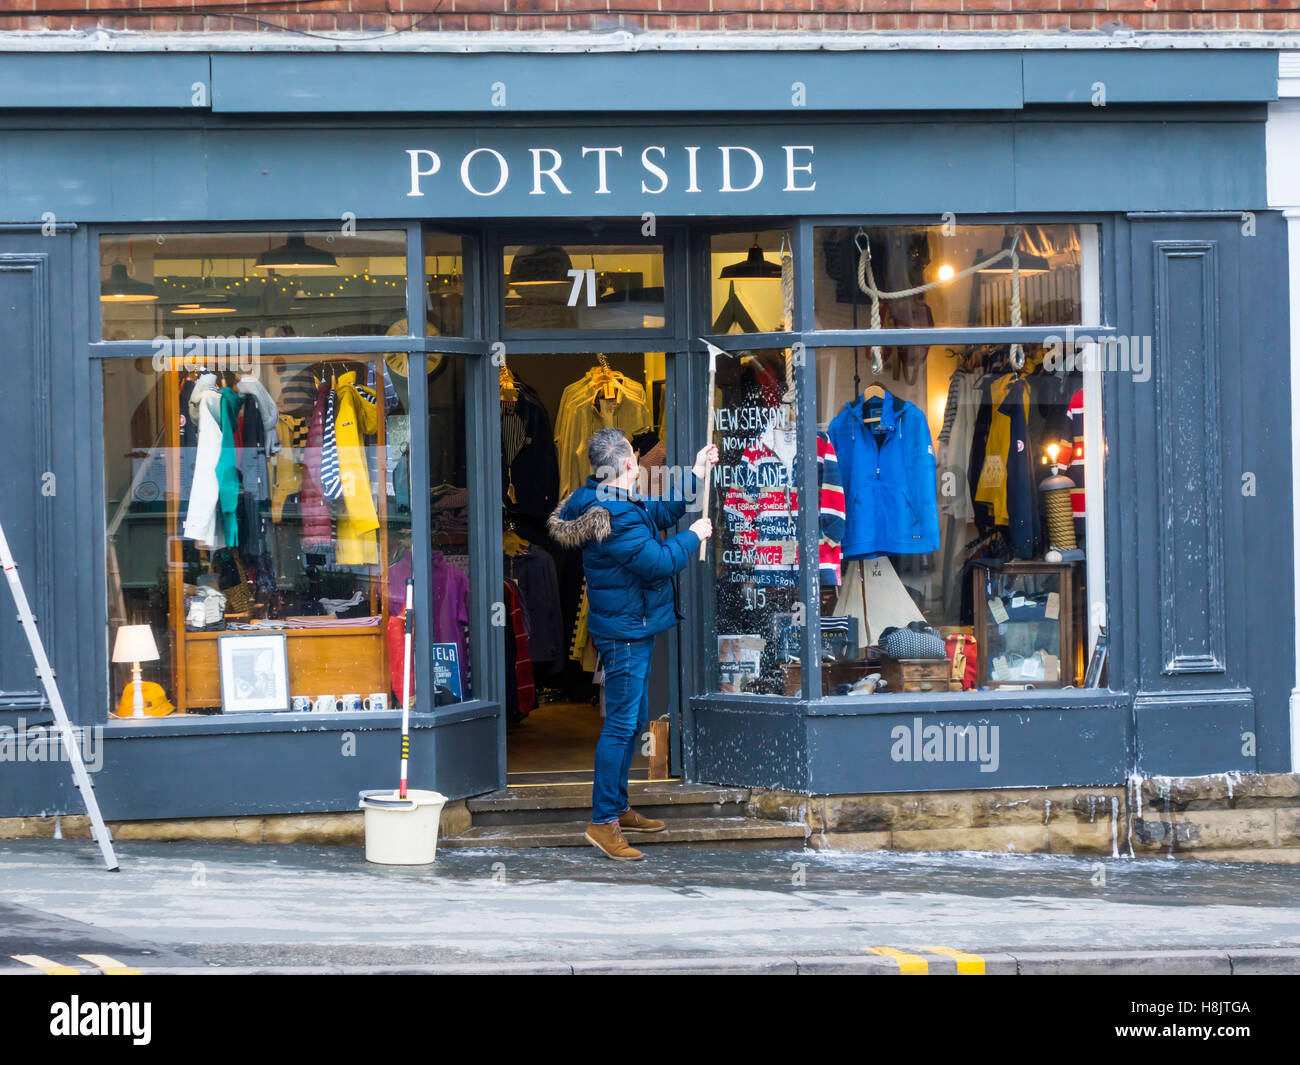 Avec l'homme et de l'eau savonneuse mops windows nettoyage et peinture sur l'avant de 'Port' d'un magasin de vêtements à Whitby Noeth Yorkshir Banque D'Images